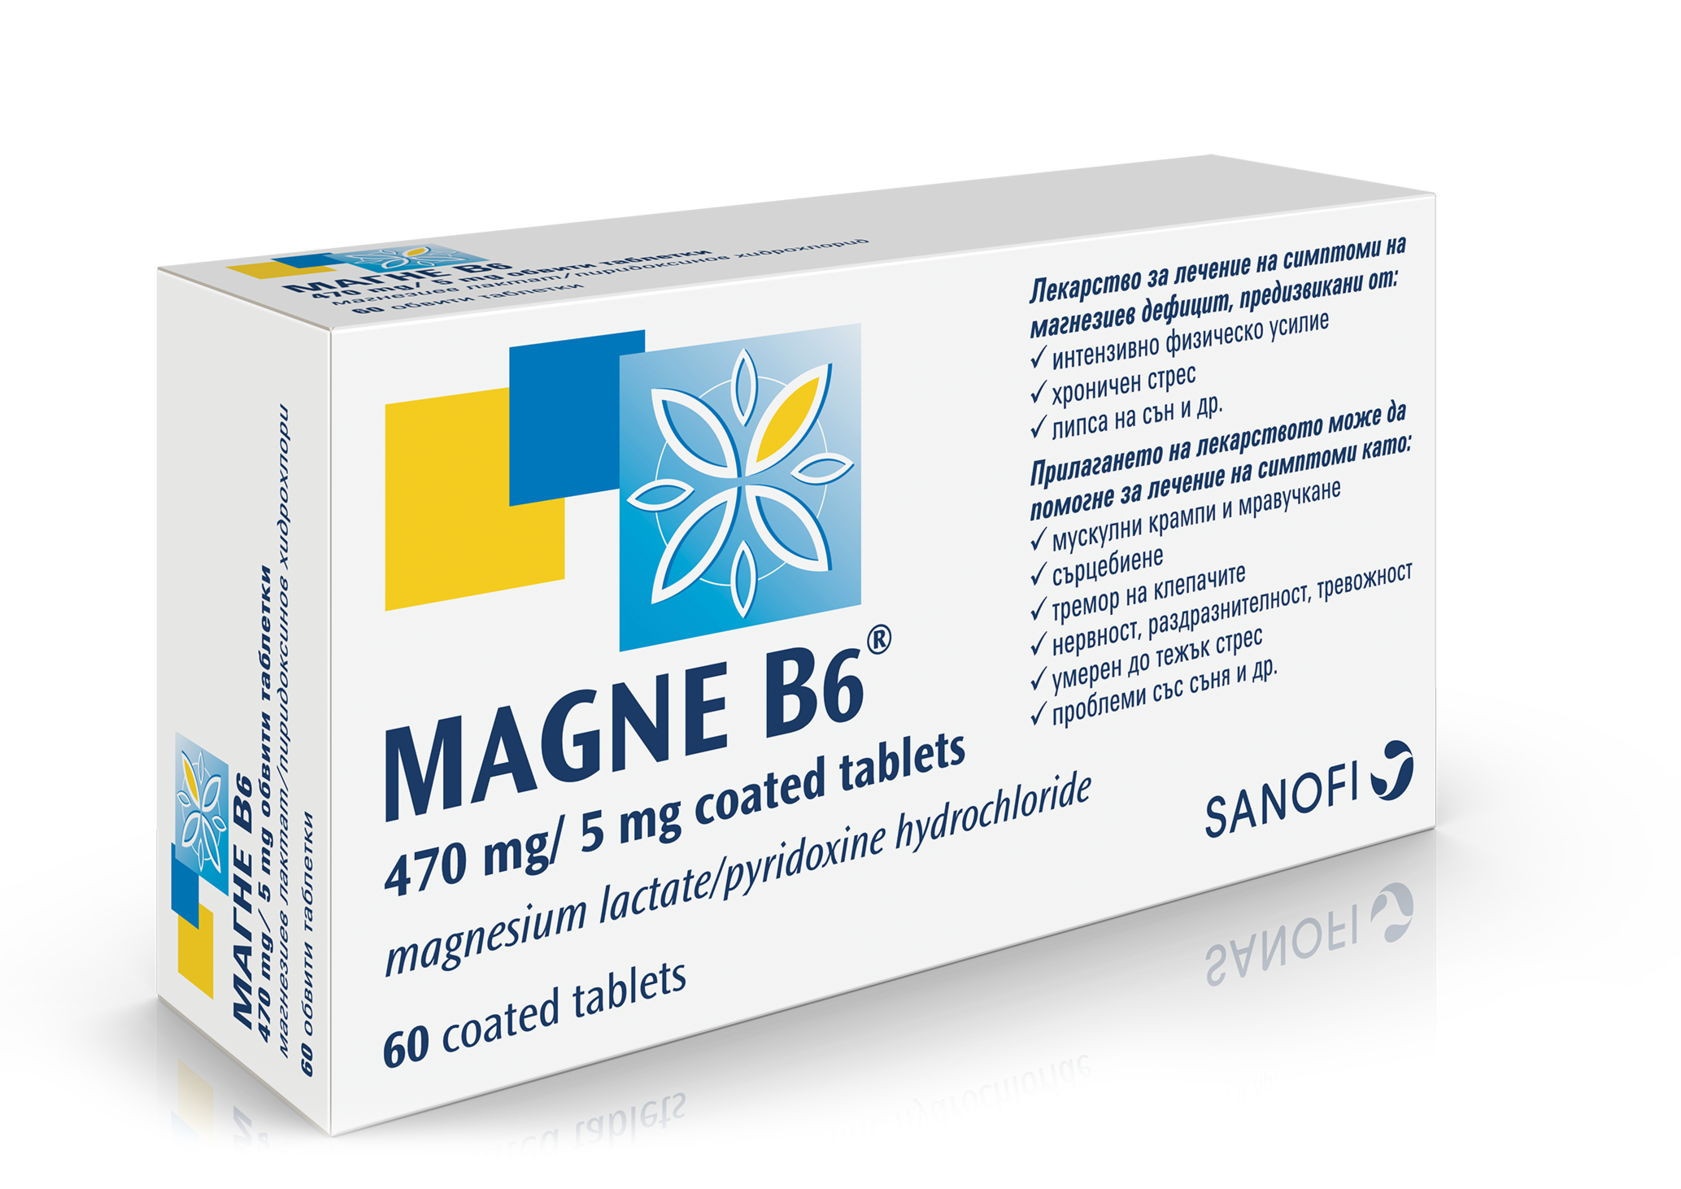 Лучшие препараты магния для женщин. Магне б6 Sanofi. Магне б6 в таблетках Sanofi. Магне b6 180 шт. Магне б6 Санофи Франция.